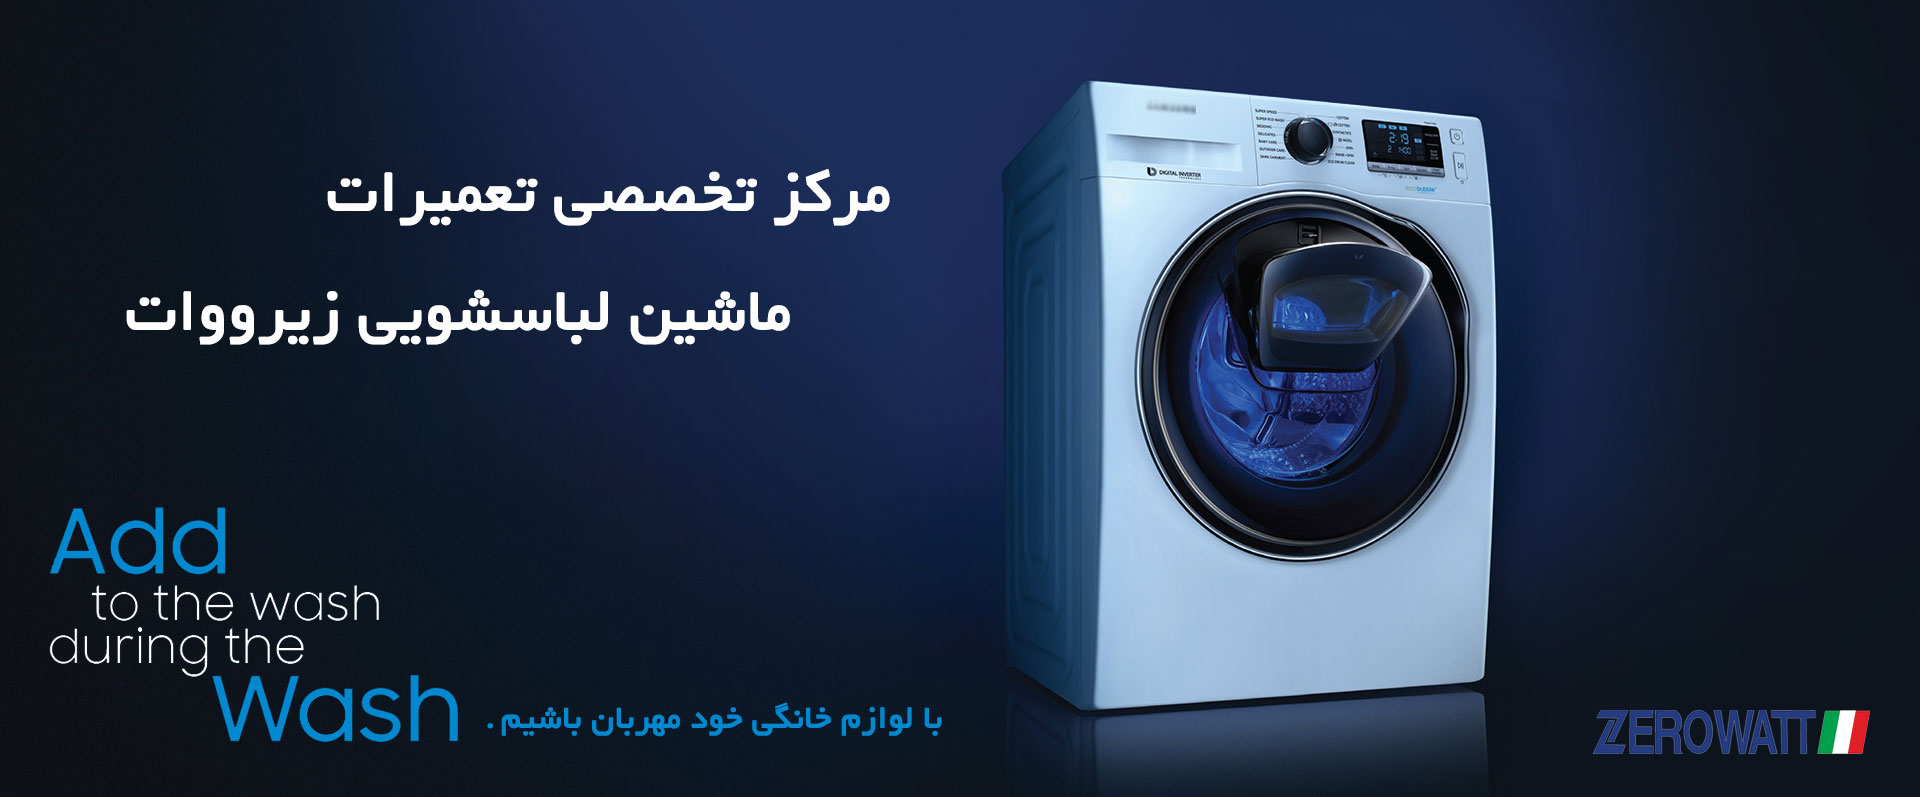 نمایندگی تعمیرات ماشین لباسشویی و ظرفشویی زیرووات در کرمان